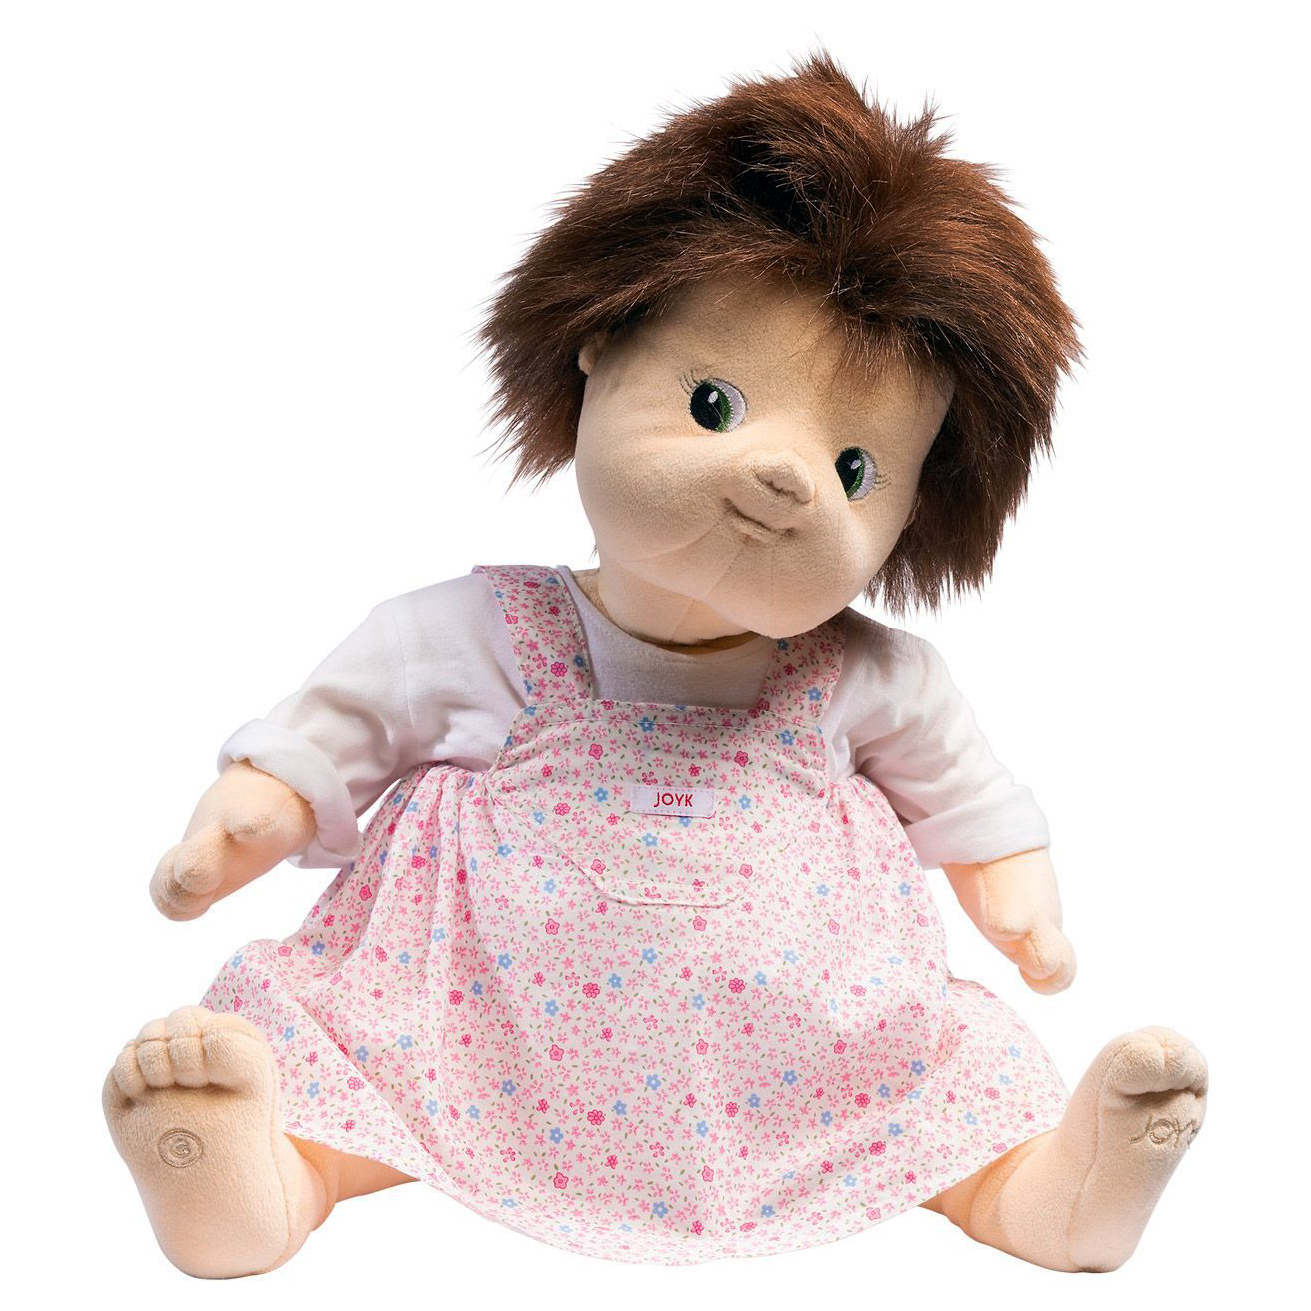 Joyk dolls - empathy doll Mandy